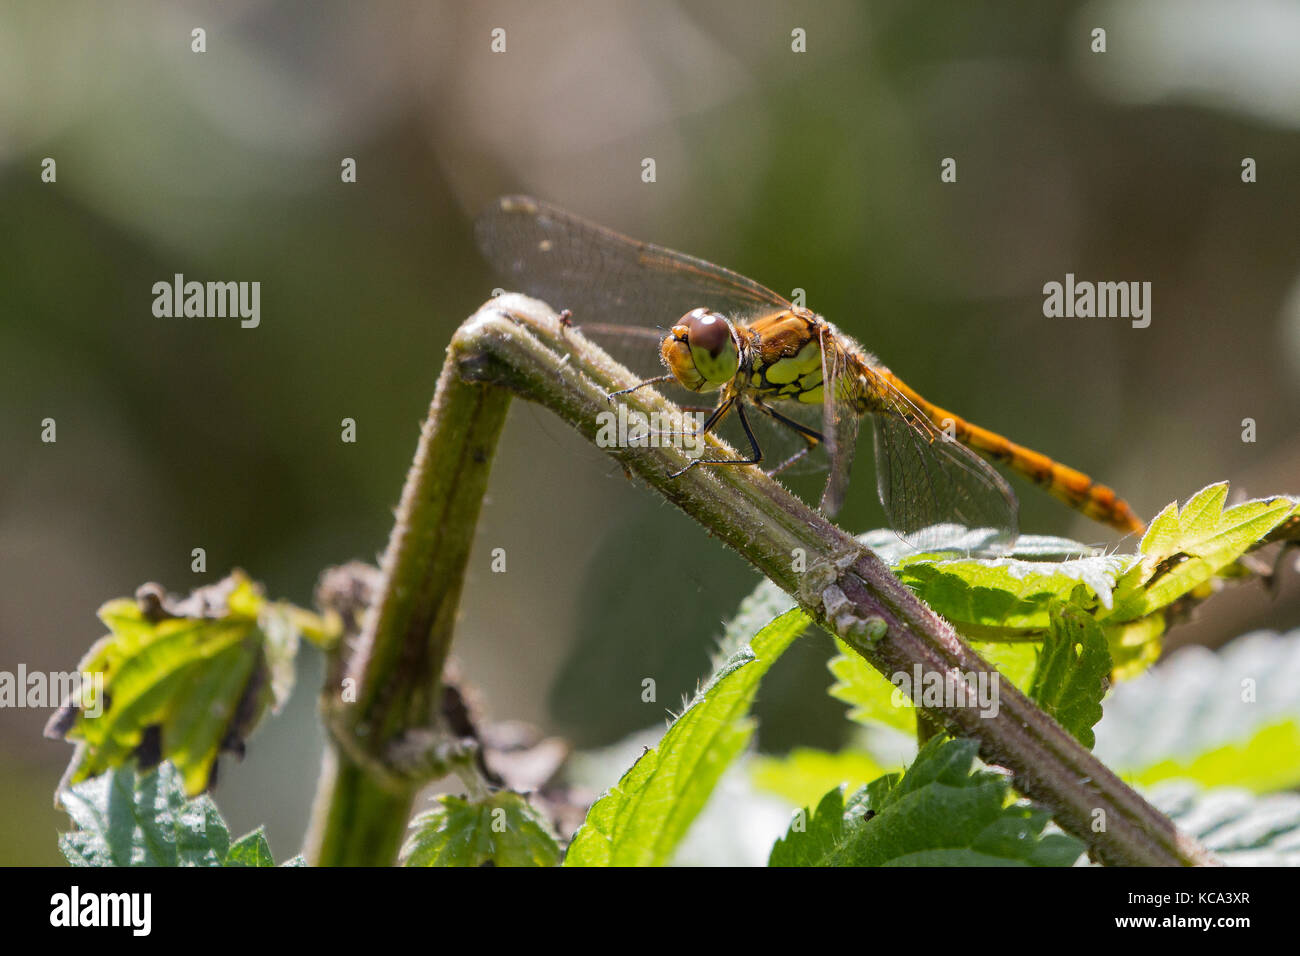 Weibliche Common Darter Dragonfly in britischen Sommer, Coleshill, Oxfordshire, Großbritannien Stockfoto